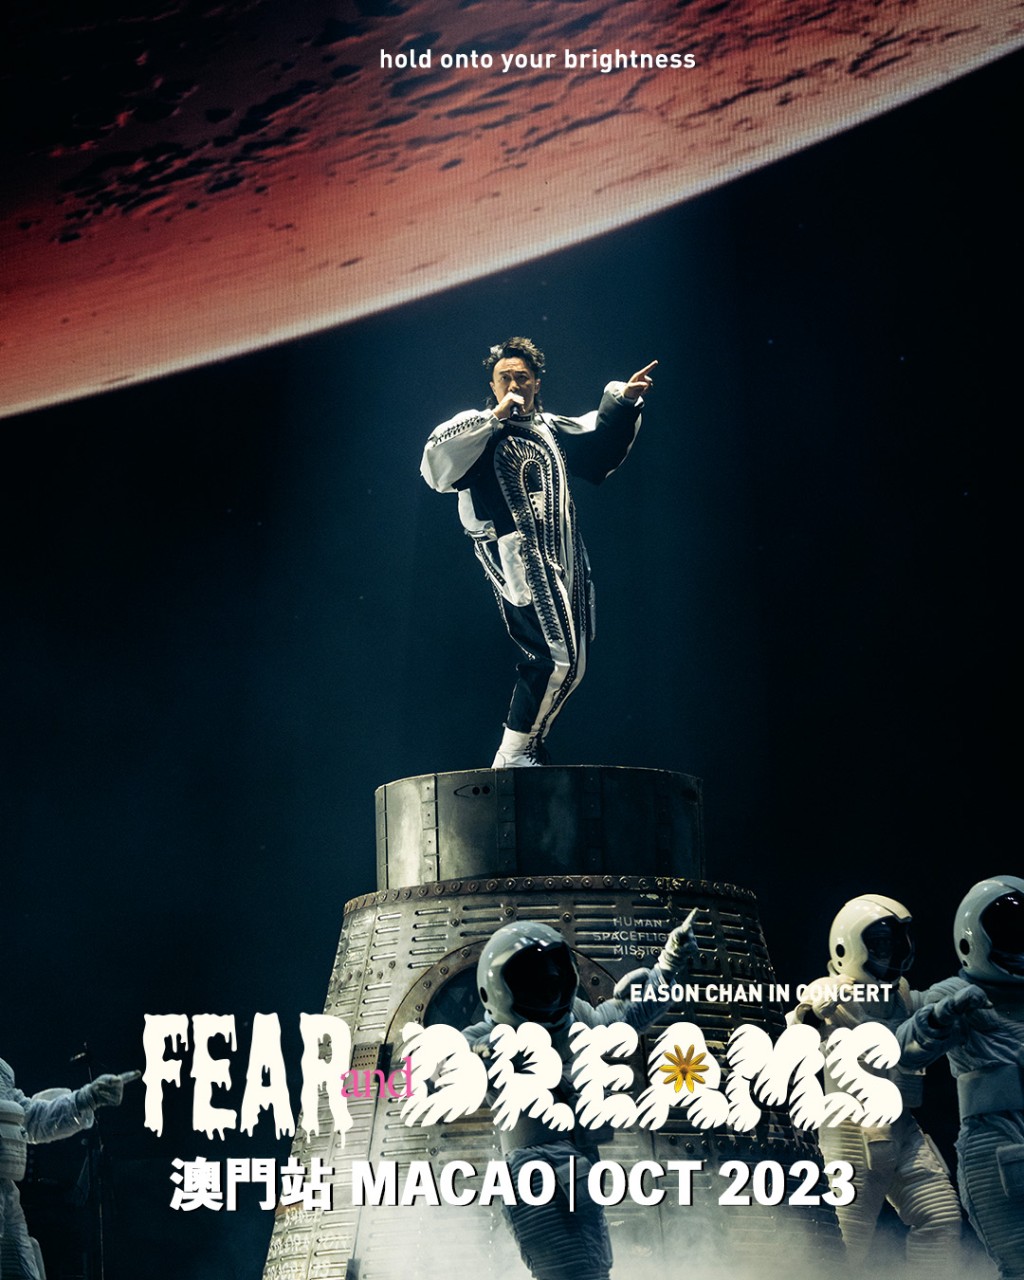 陈奕迅《FEAR AND DREAMS世界巡回演唱会》10月时在澳门举行。